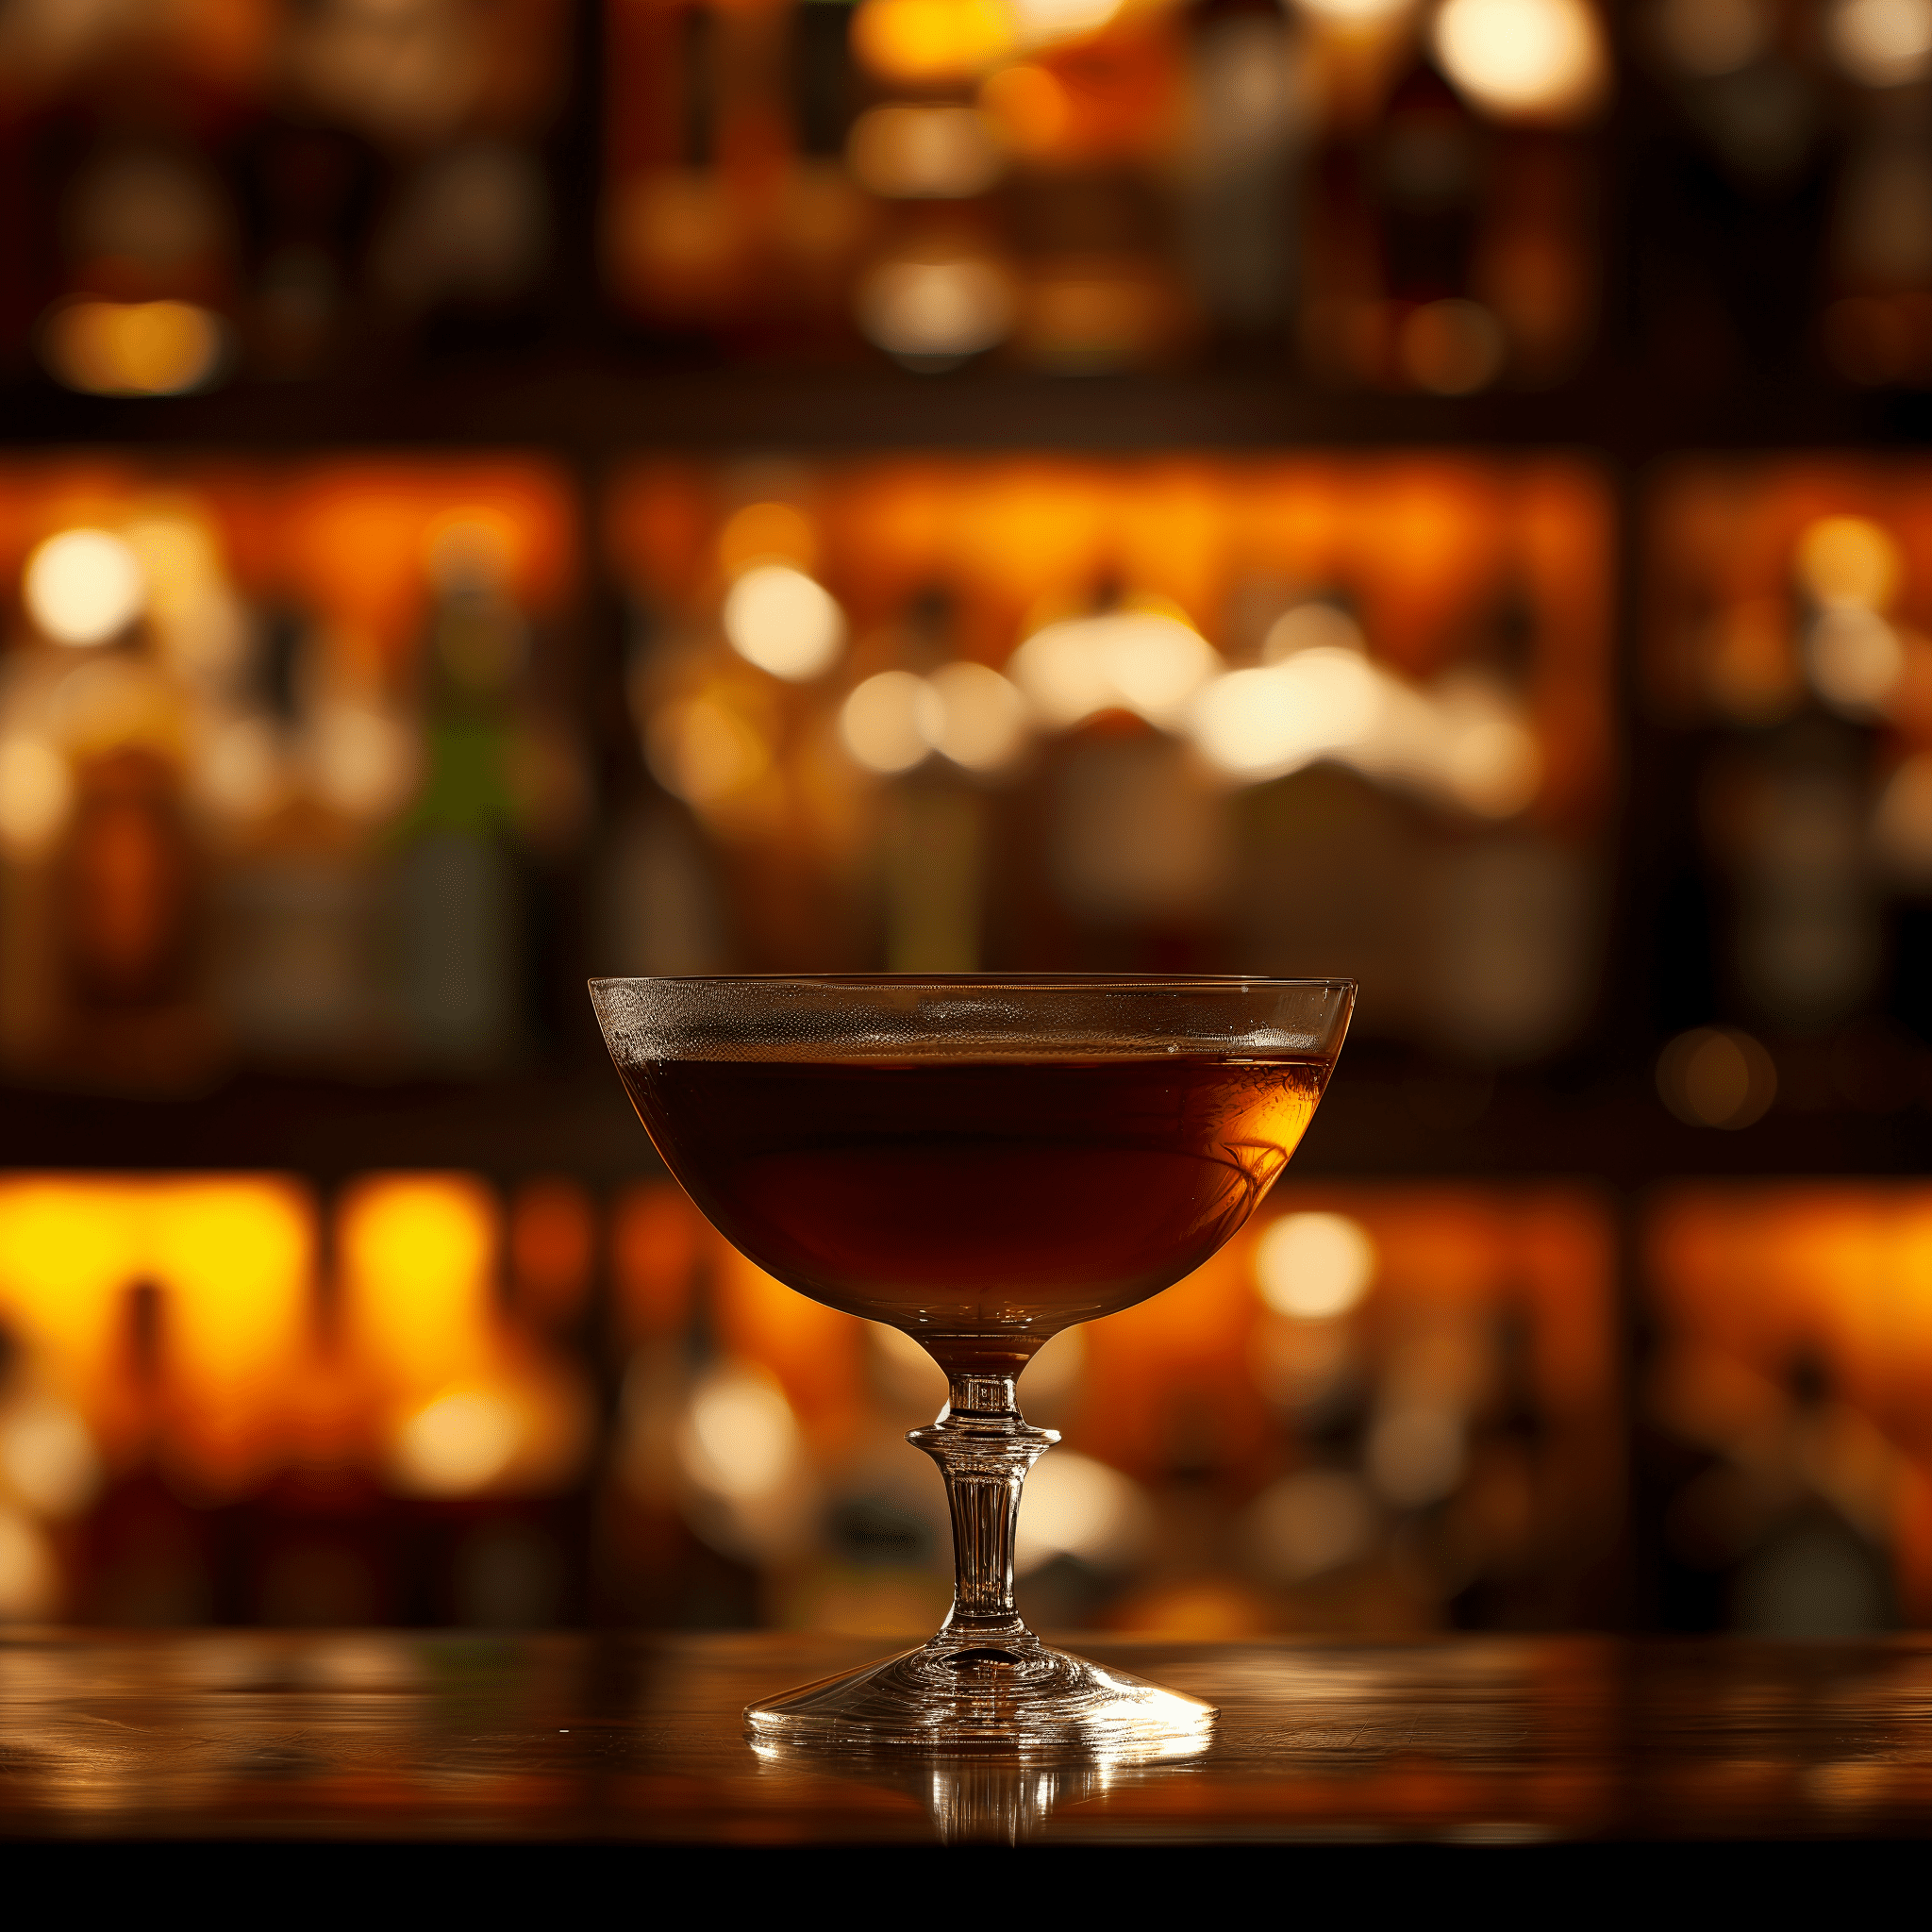 Crow Cóctel Receta - El cóctel Crow ofrece un perfil de sabor robusto con los matices ahumados del whisky escocés complementados por la nitidez del limón y la dulzura sutil de la granadina. Es una mezcla audaz, compleja y ligeramente ácida.